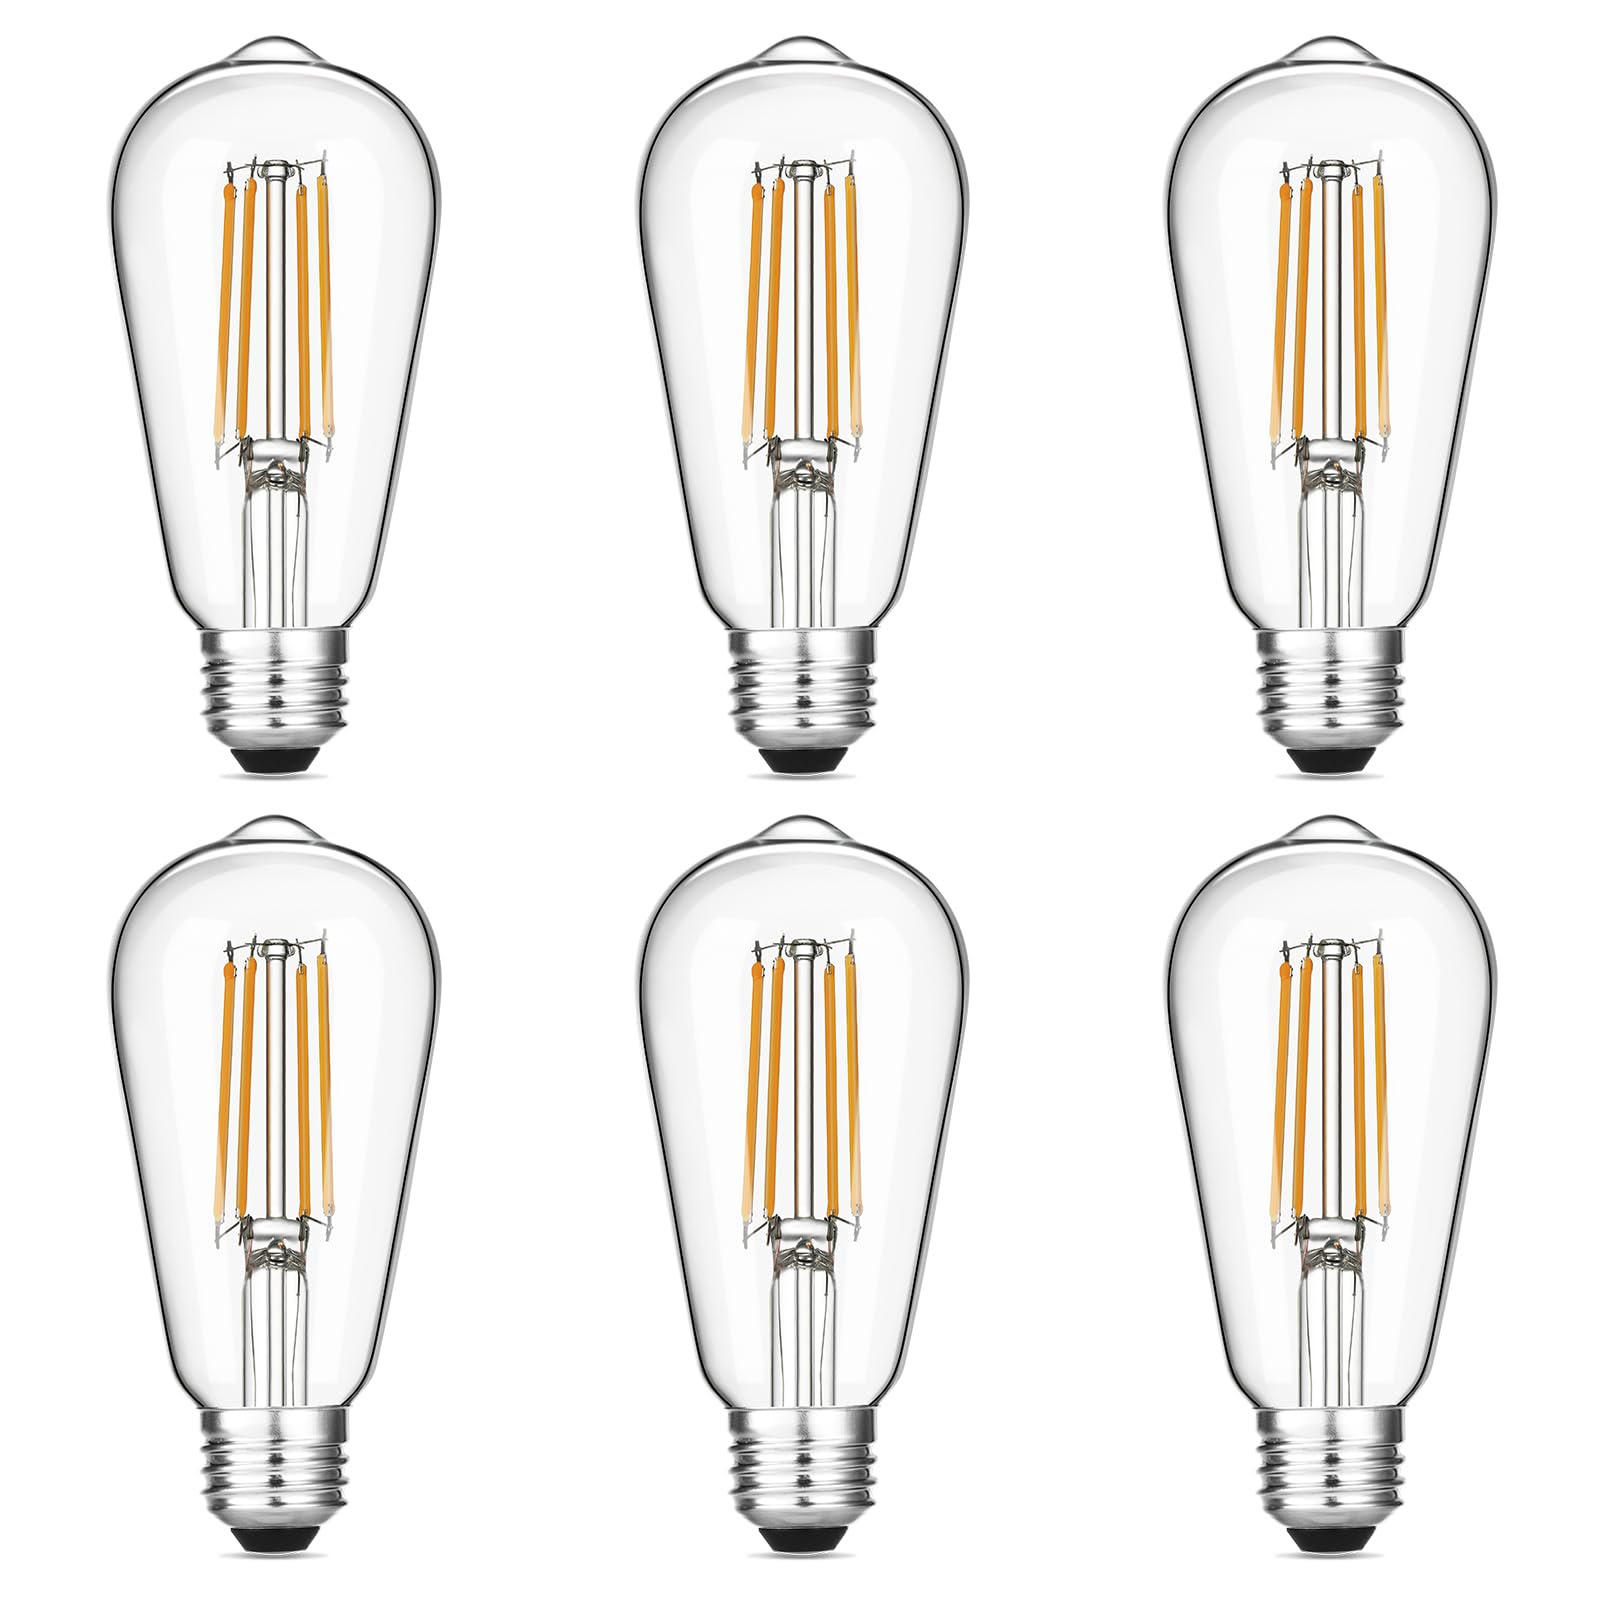 Gozelux Vintage LED Edison Bulbs